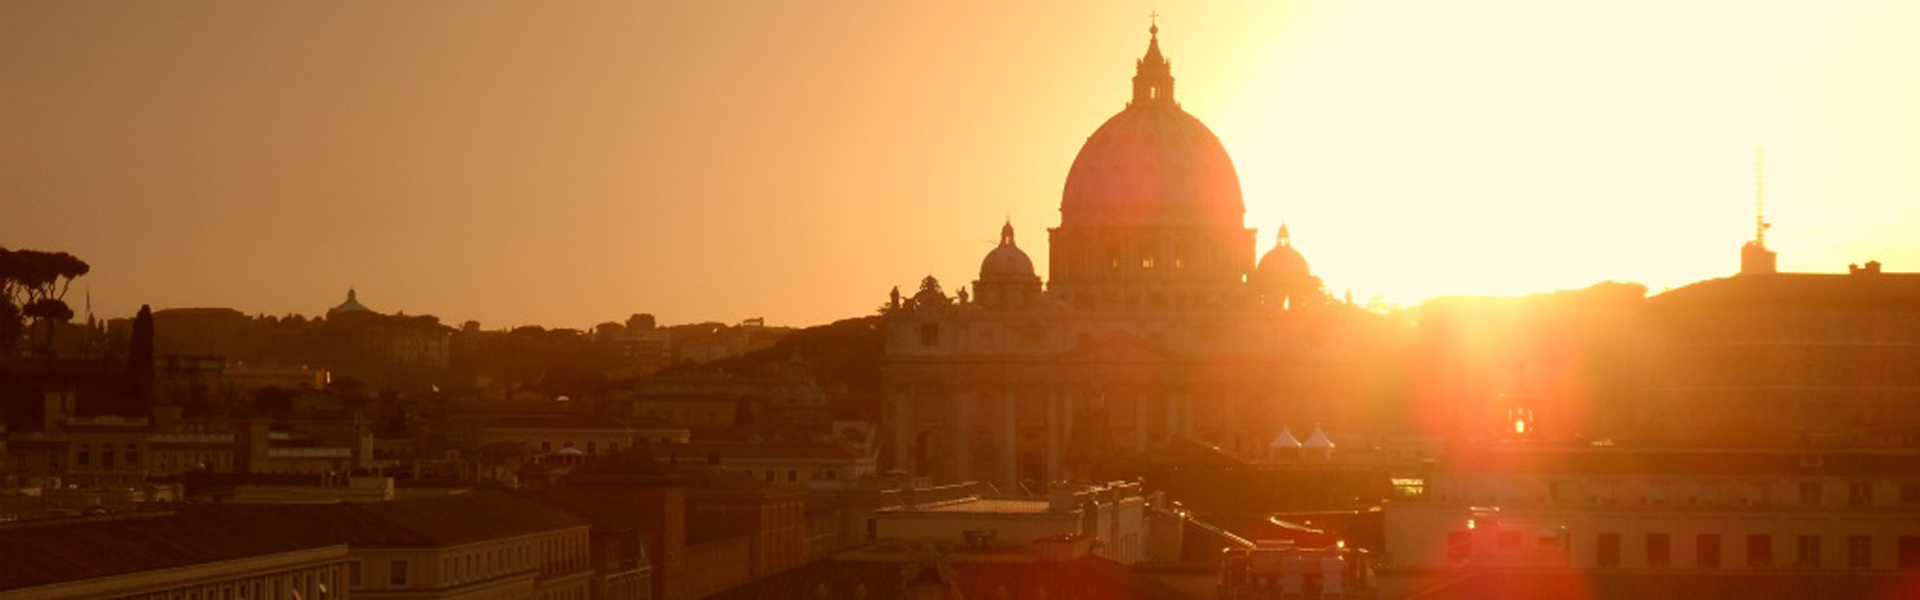 Lugares para ver o mundo: terraço do Castelo Sant’Angelo, Roma